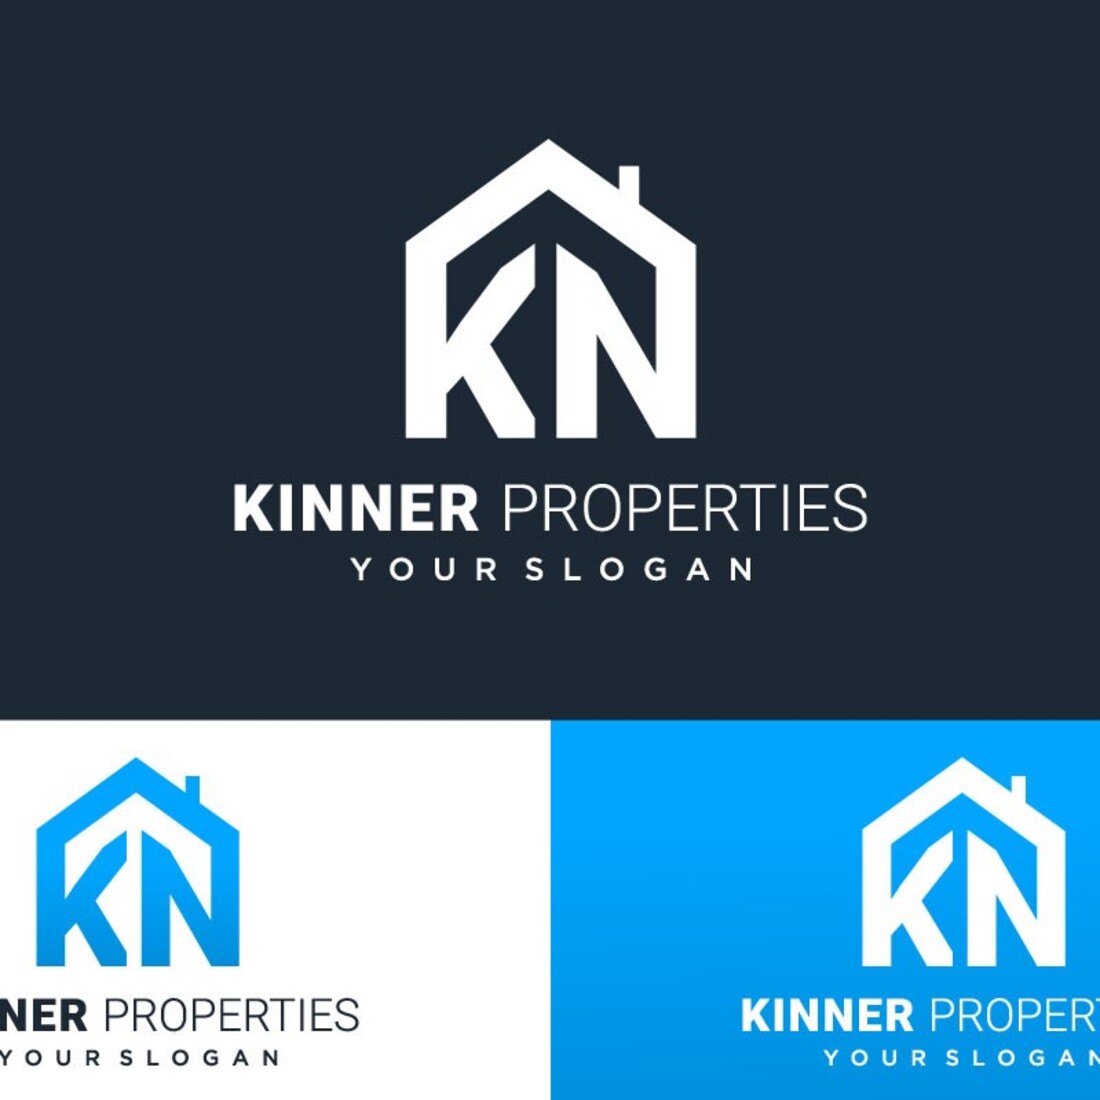 KN House Logo Vector Design cover image.